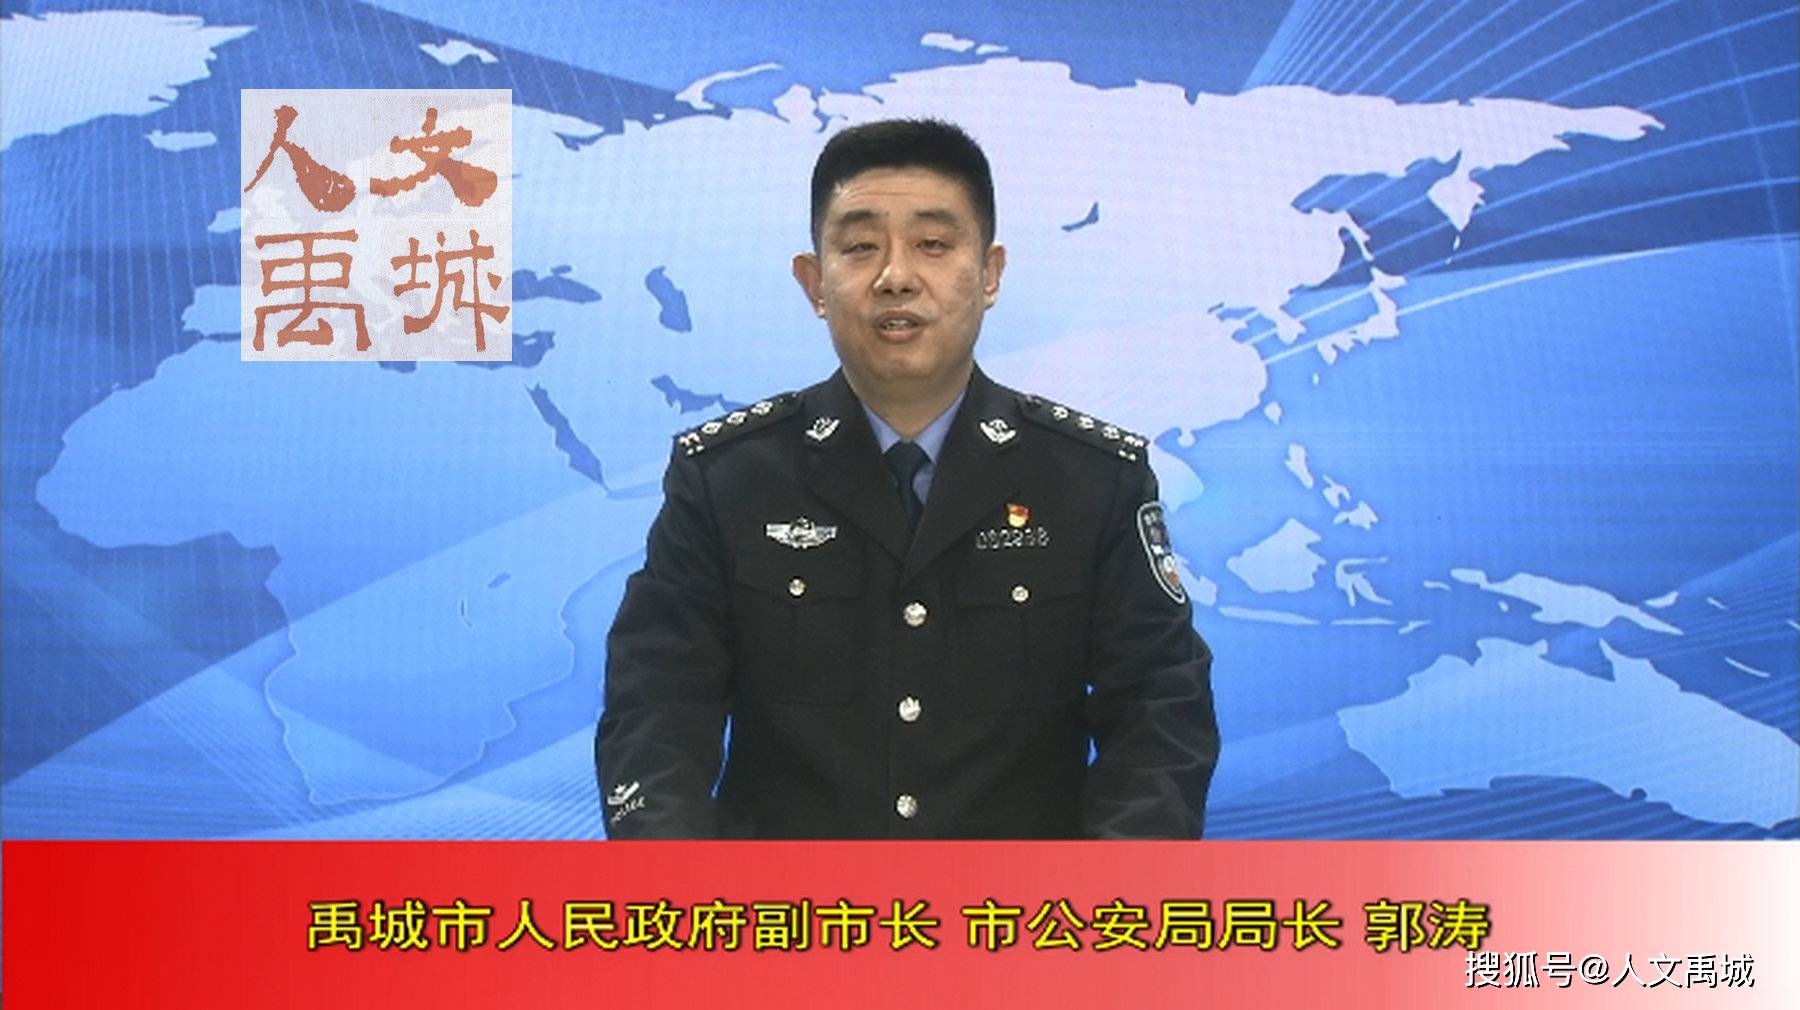 禹城副市长公安局局长郭涛关于疫情防控的电视讲话